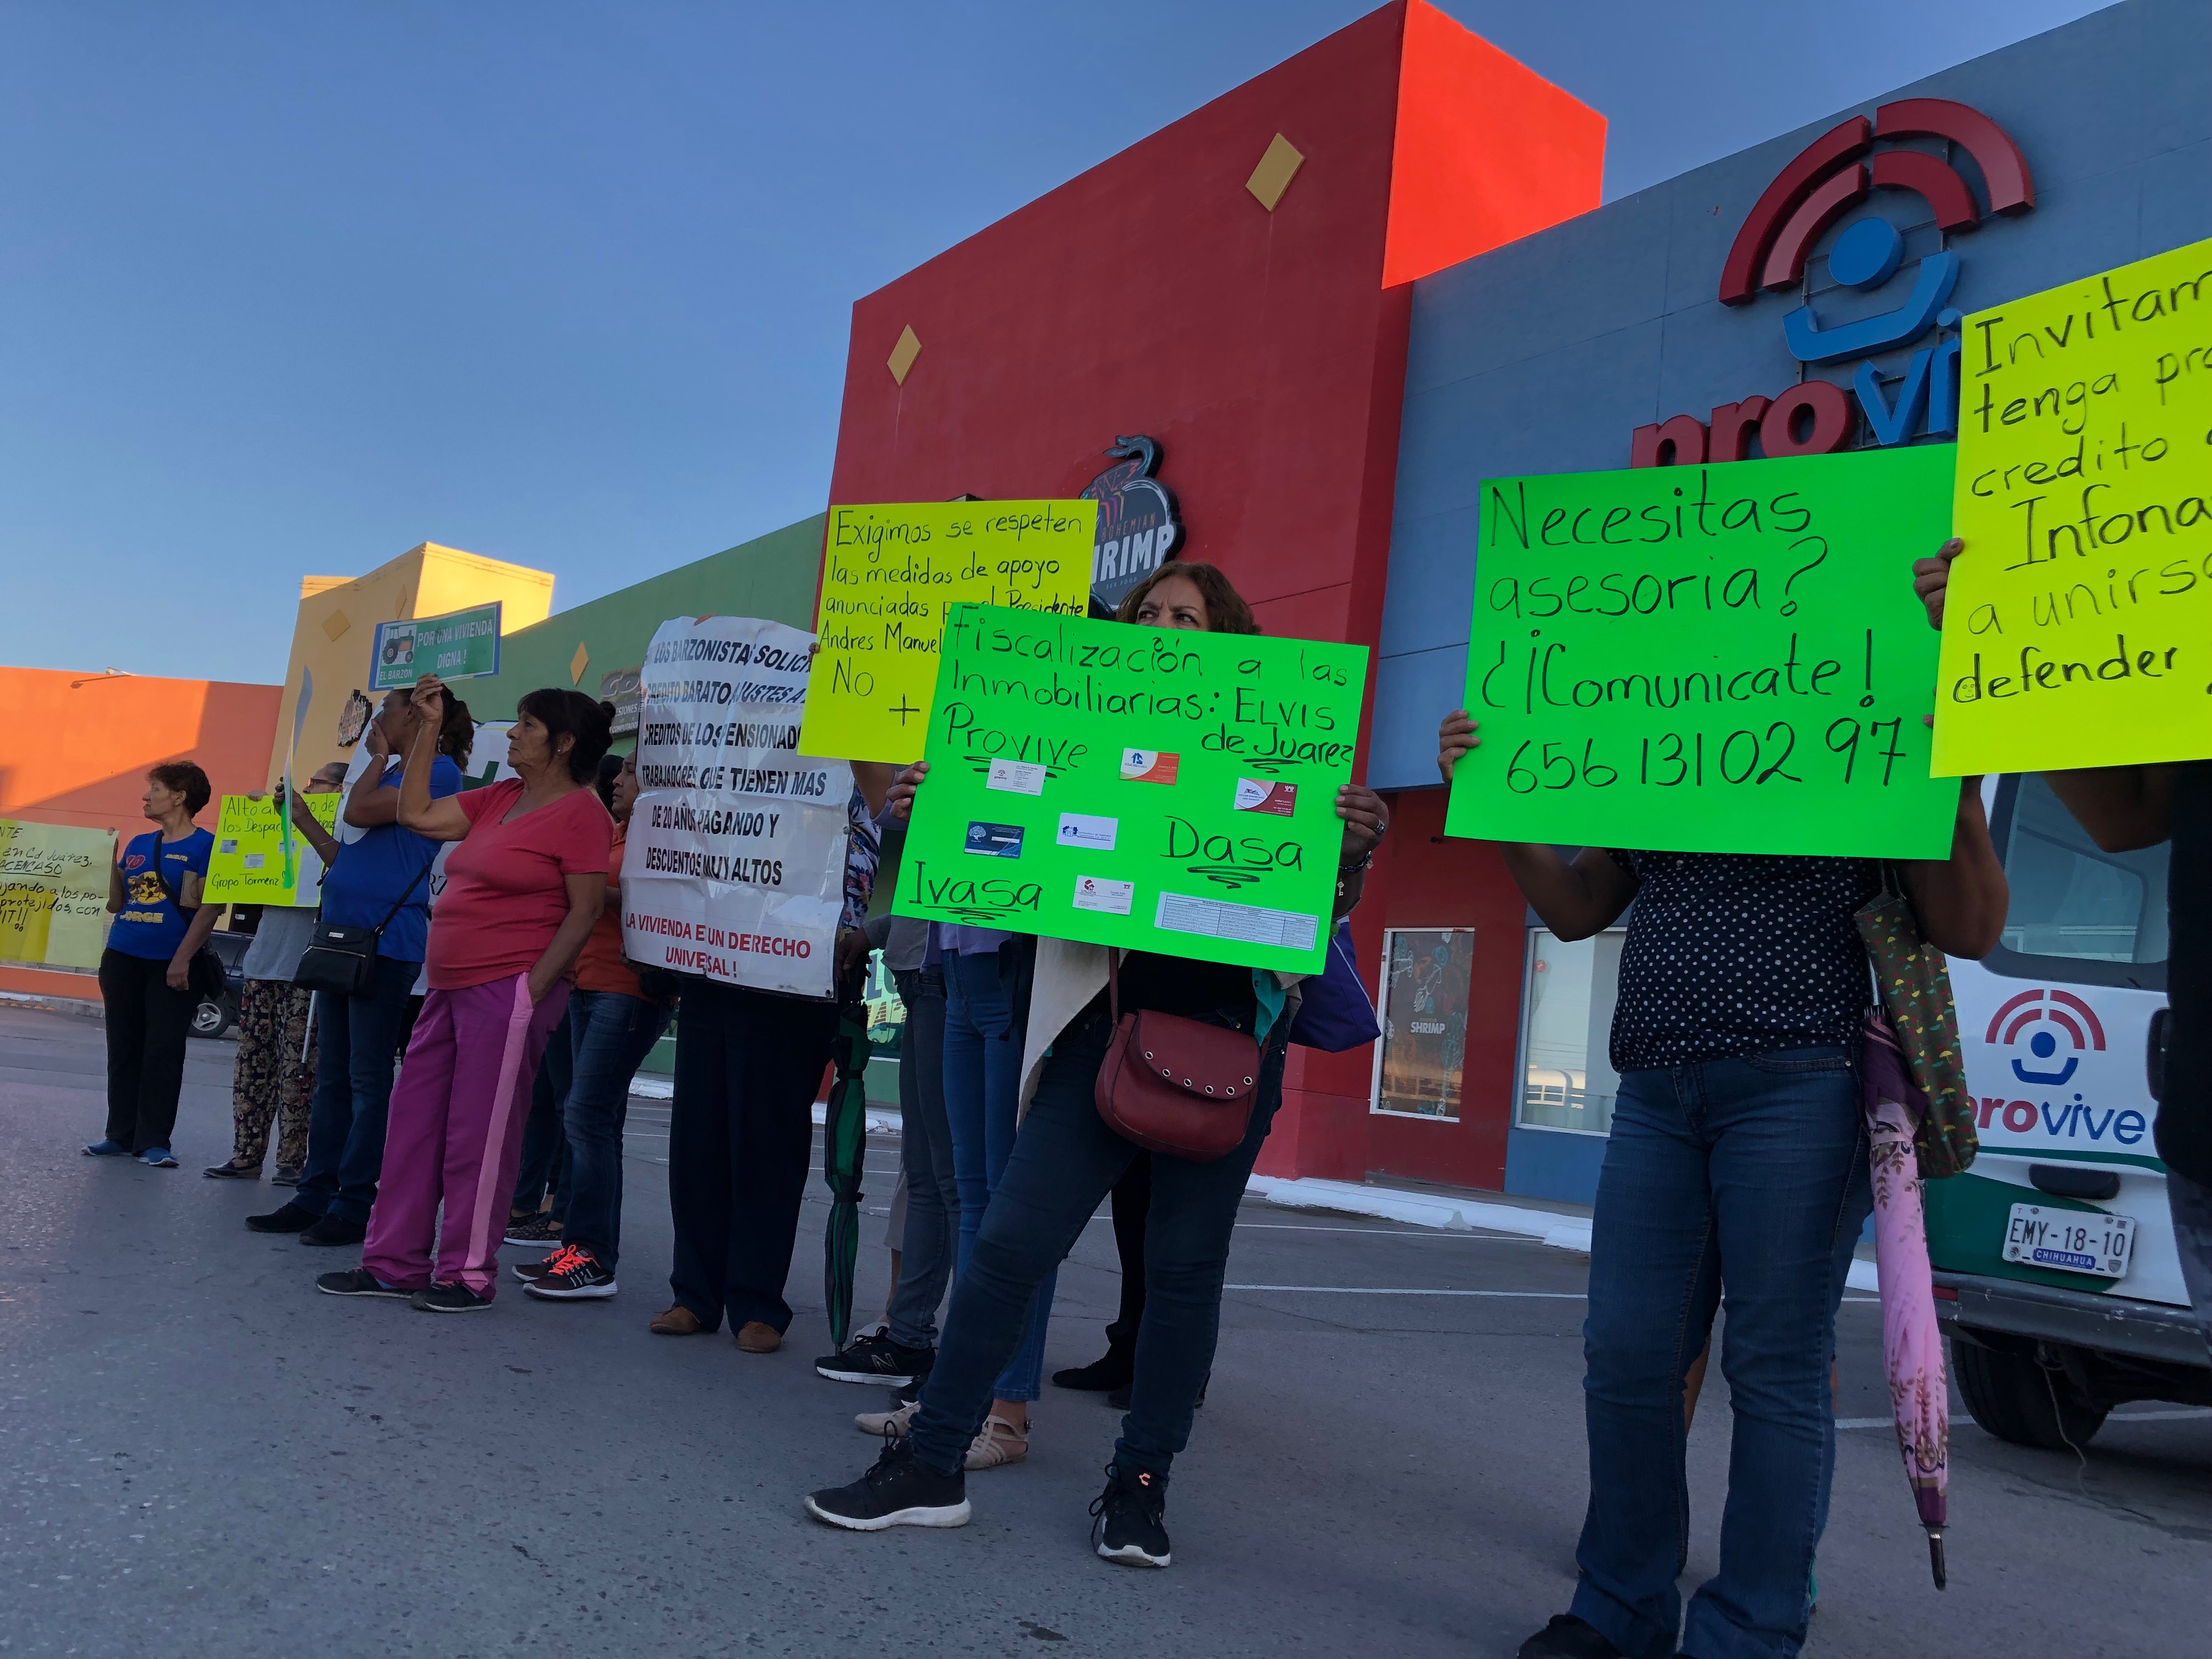 Despojos de viviendas desatan protesta contra inmobiliaria (Chihuahua)